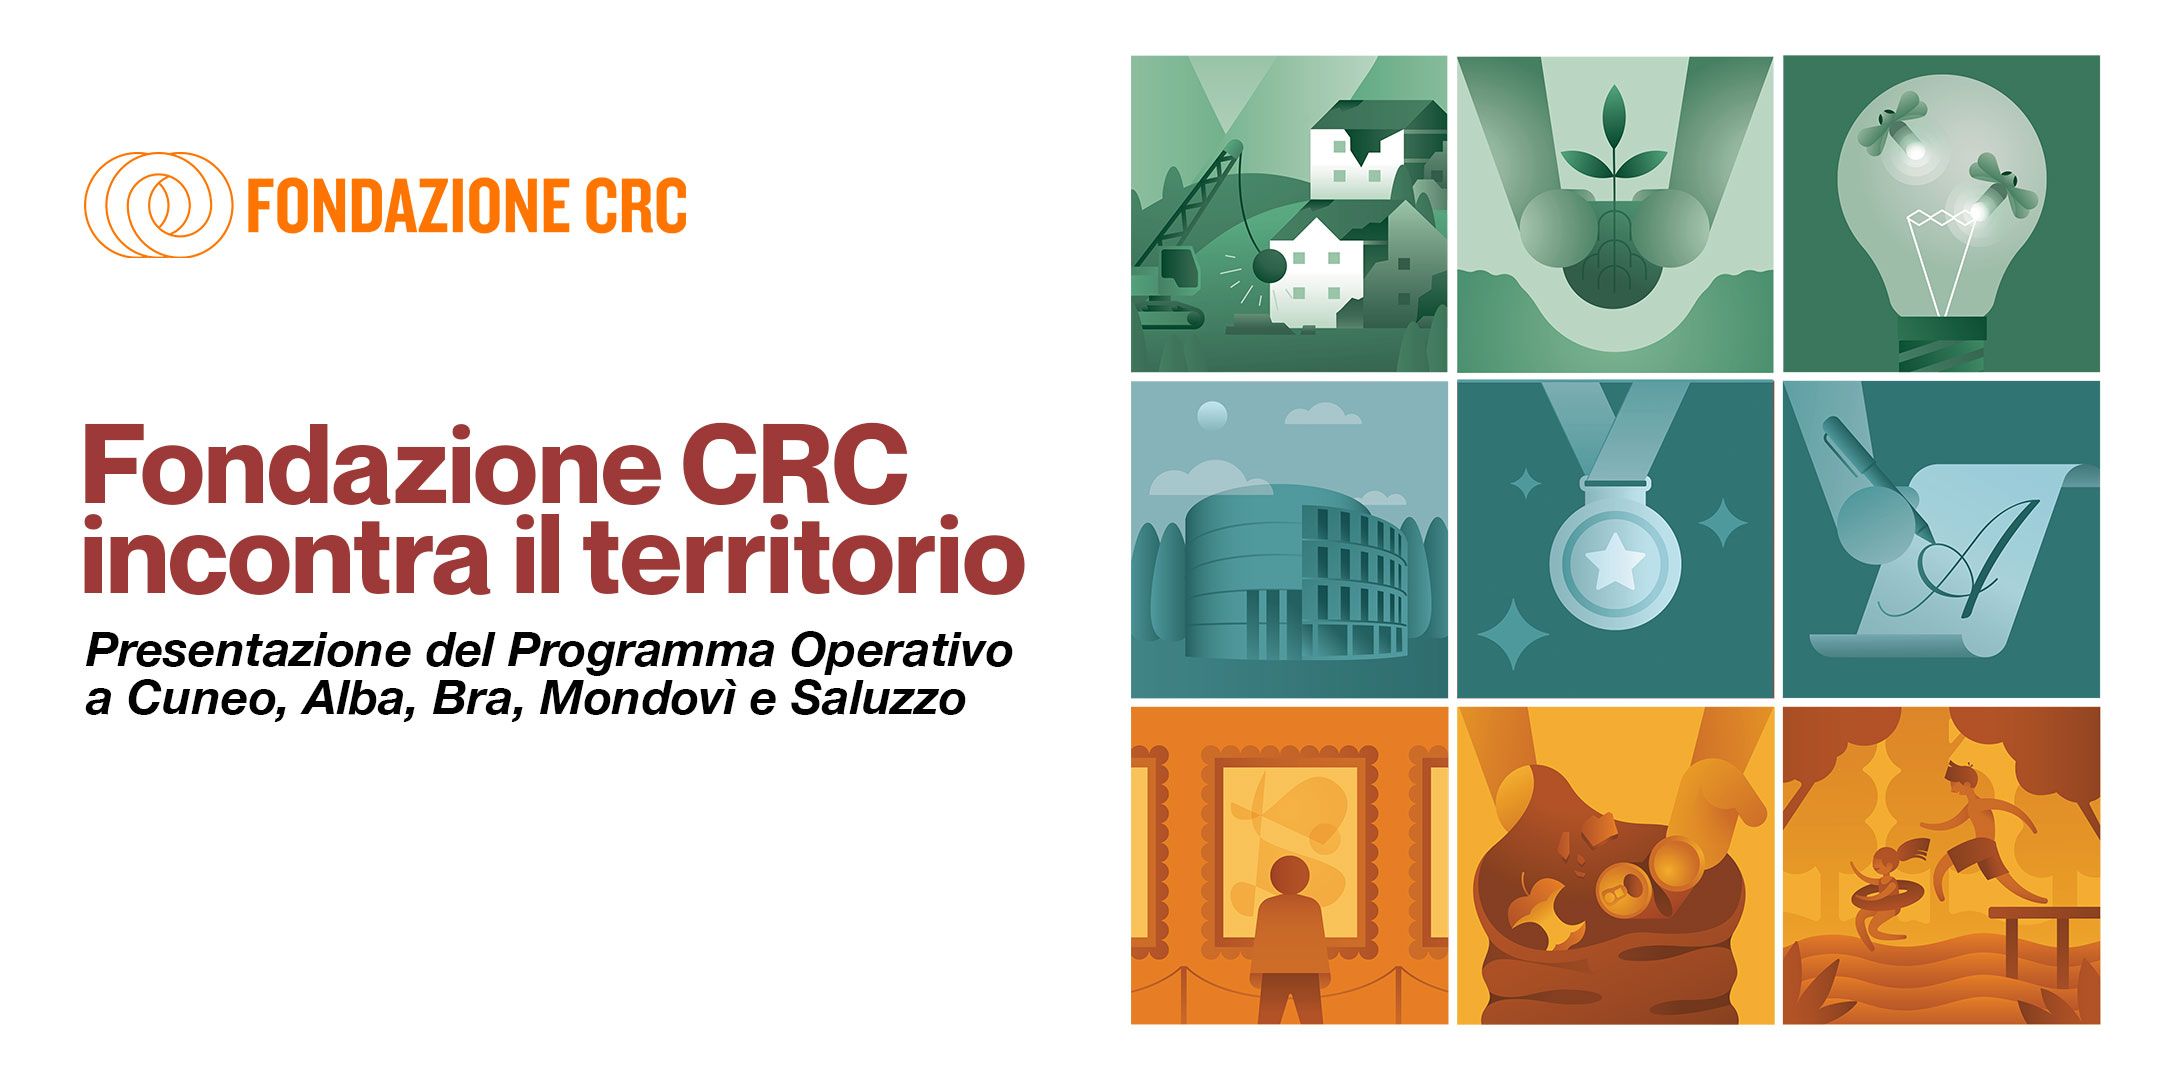 La Fondazione CRC incontra il territorio: presentazione del PO